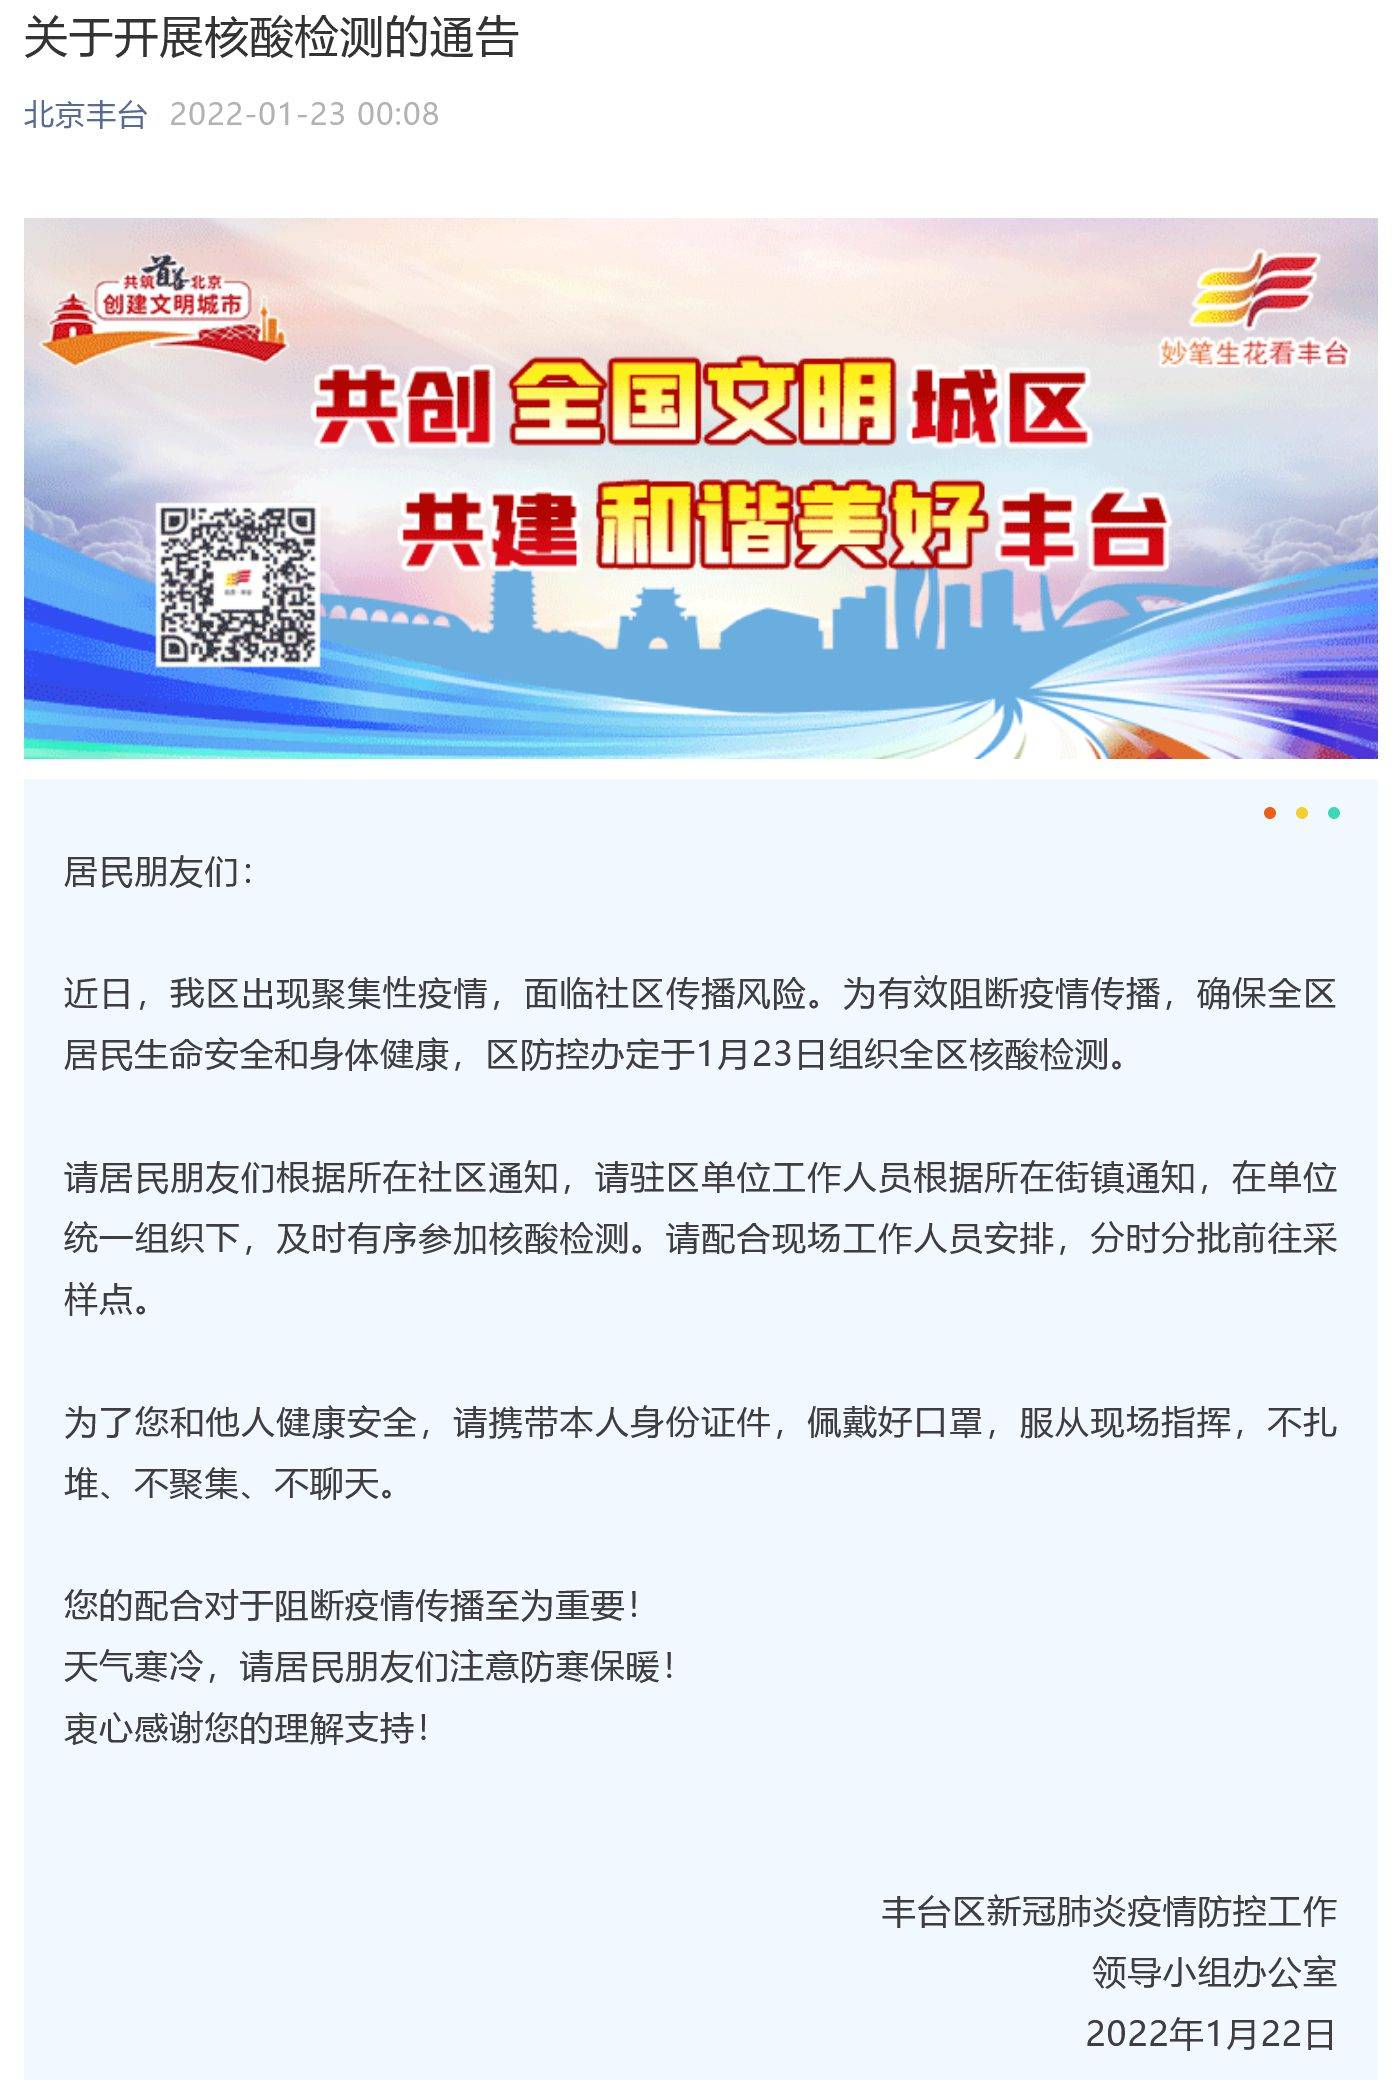 柳园成|北京丰台23日开展全区核酸检测 玉泉营万柳园成高风险地区